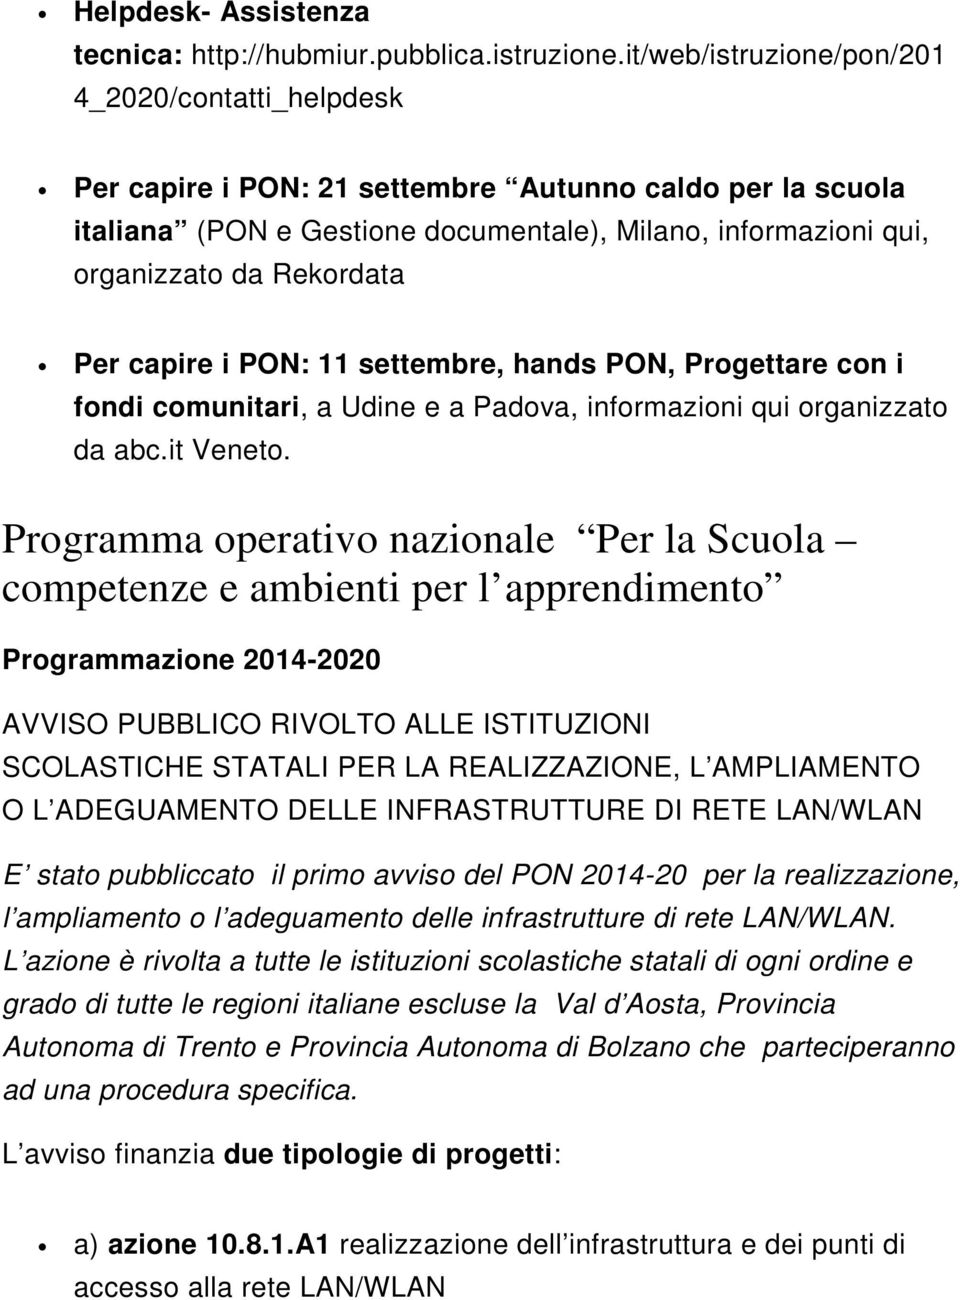 Per capire i PON: 11 settembre, hands PON, Progettare con i fondi comunitari, a Udine e a Padova, informazioni qui organizzato da abc.it Veneto.